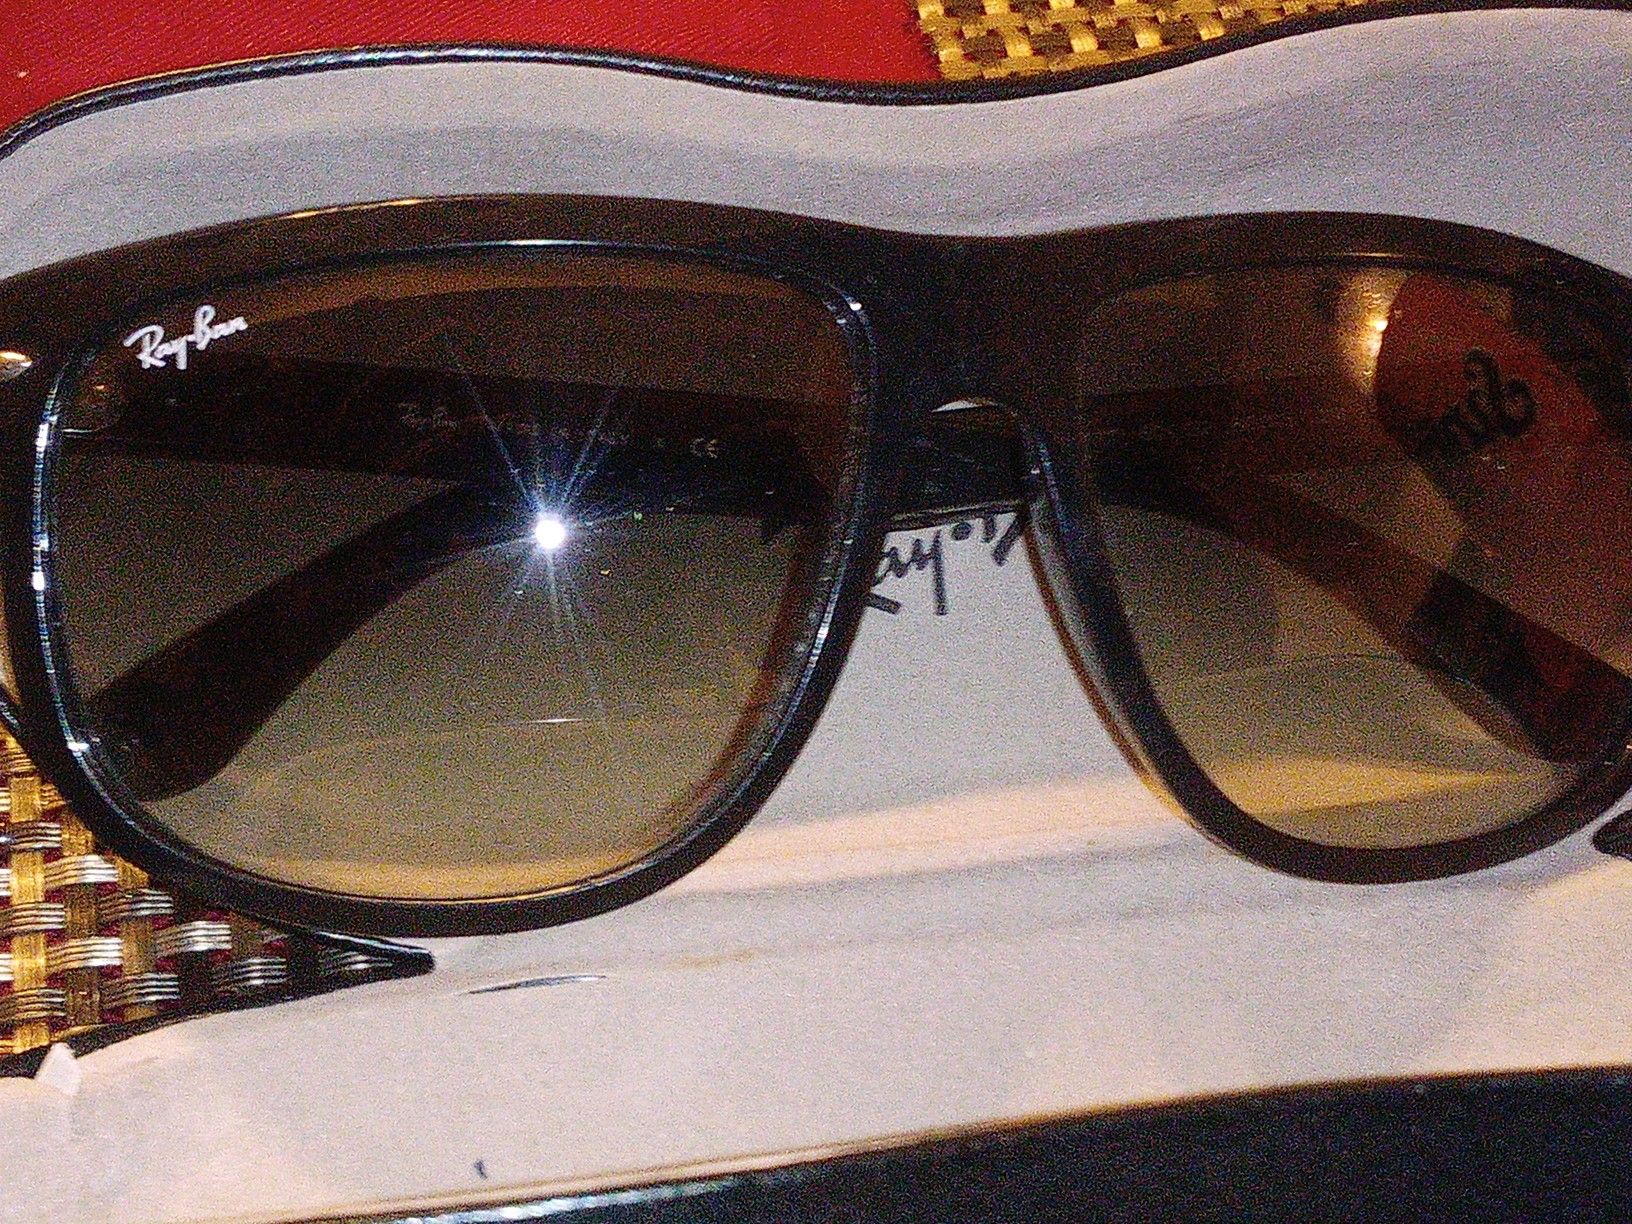 Sun glasses